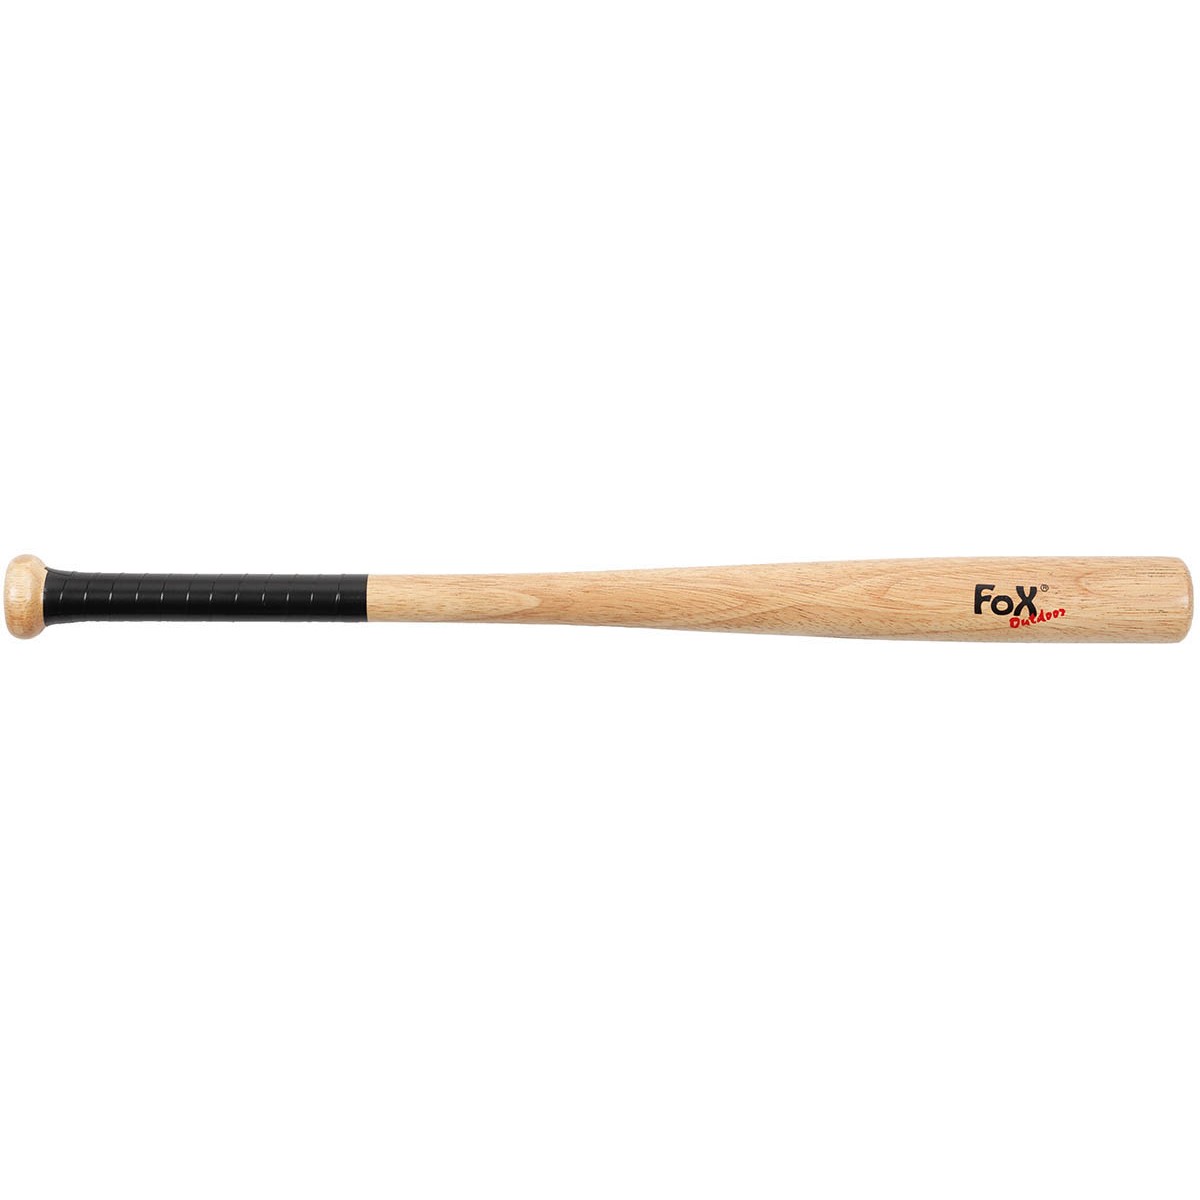 Batte de baseball FOX bois 66 cm (26